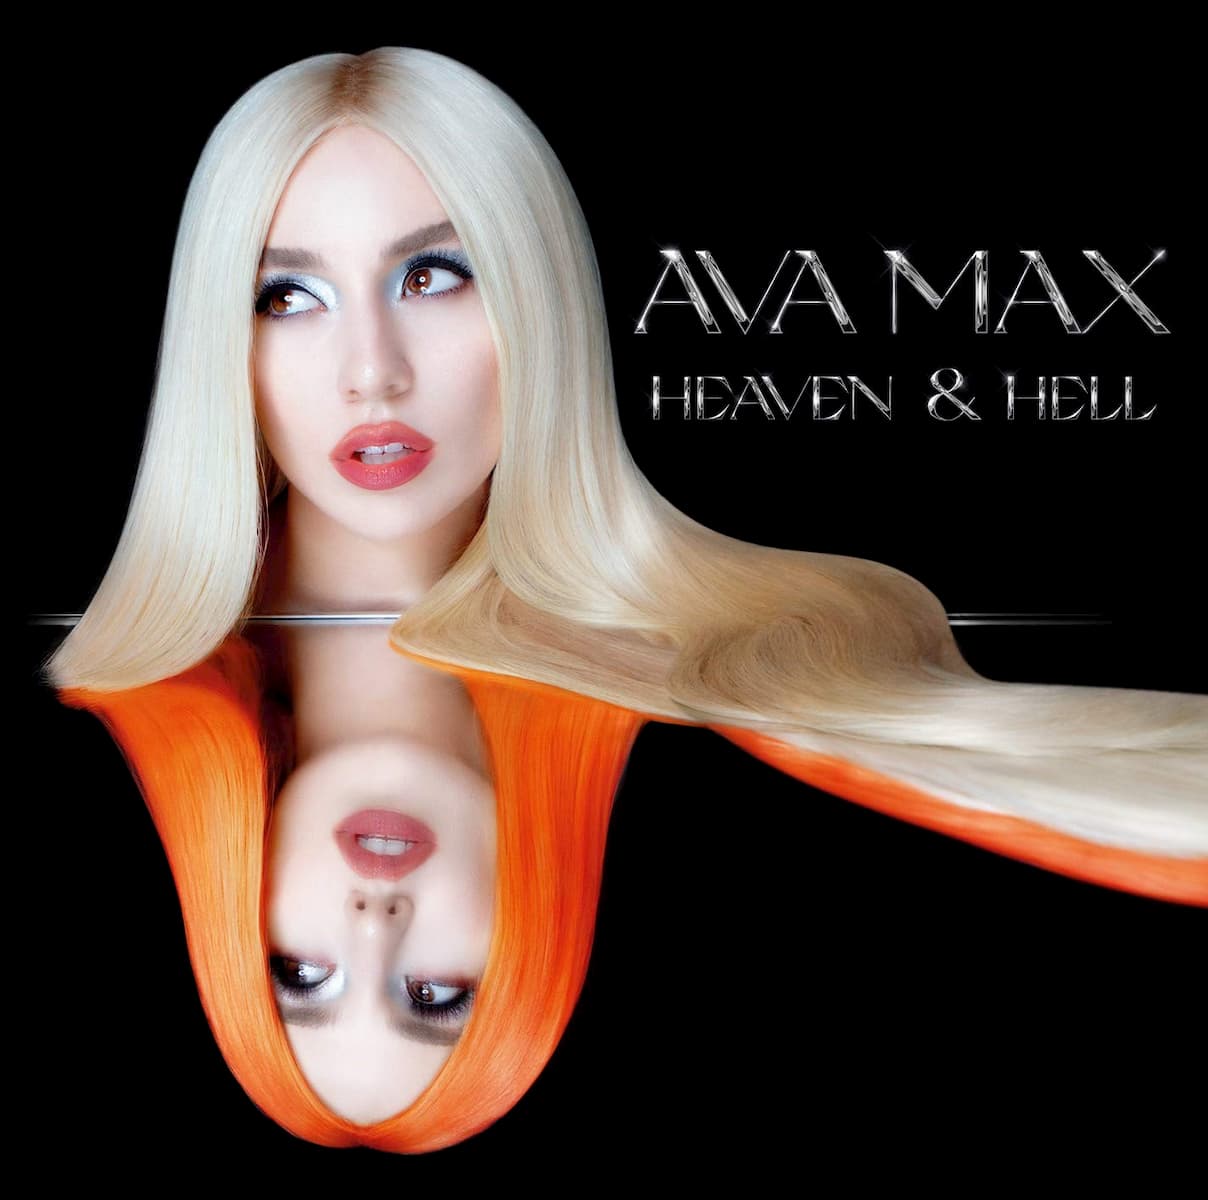 Ava Max kündigt Album “Heaven & Hell” an